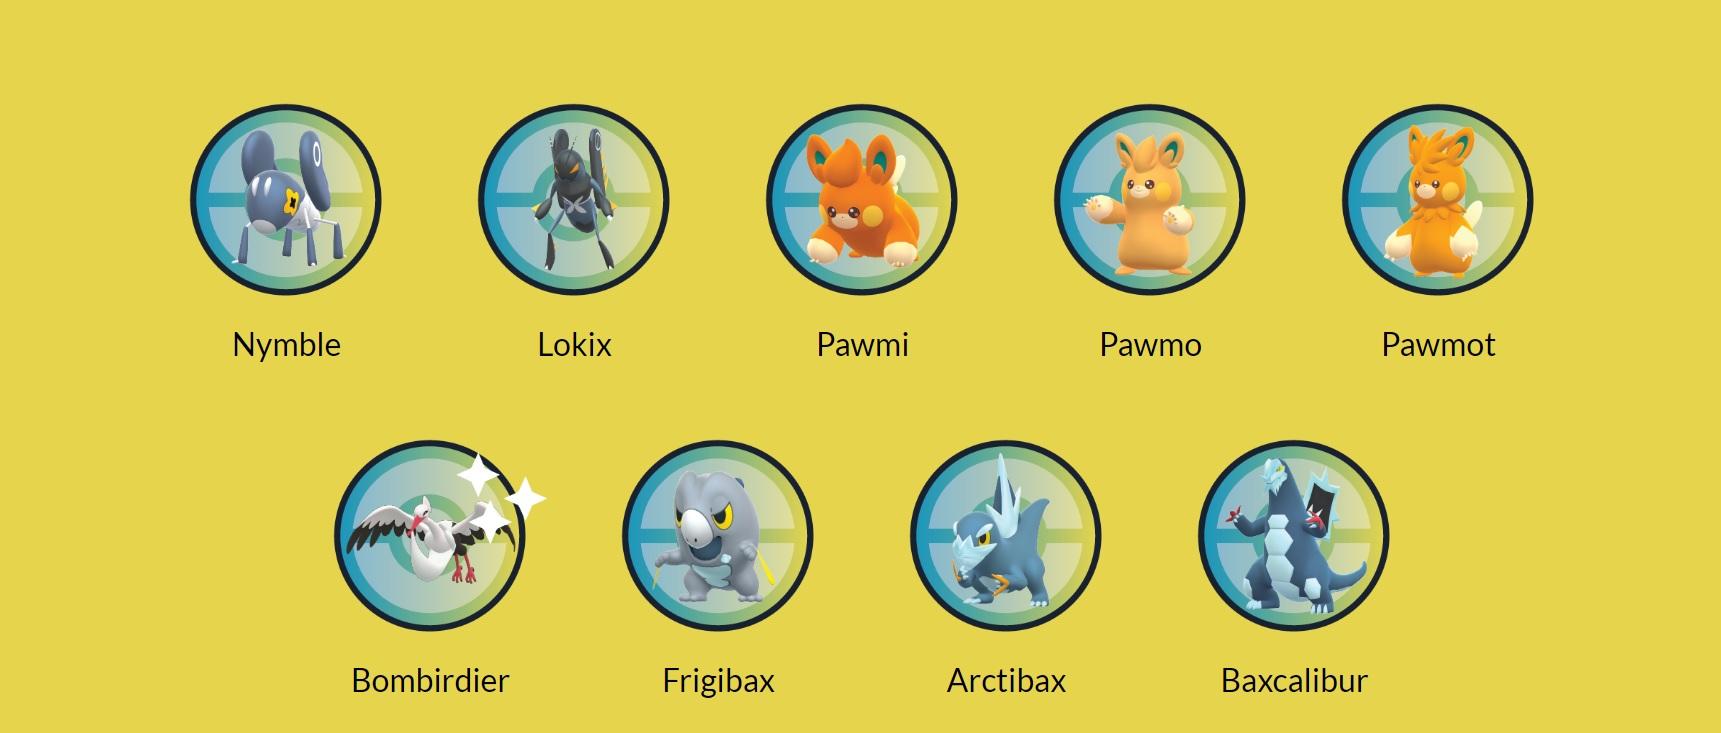 Eine Liste der in Pokémon GO verfügbaren Pokémon der Generation IX, darunter Pawmi, Pawmo und Pawmot.